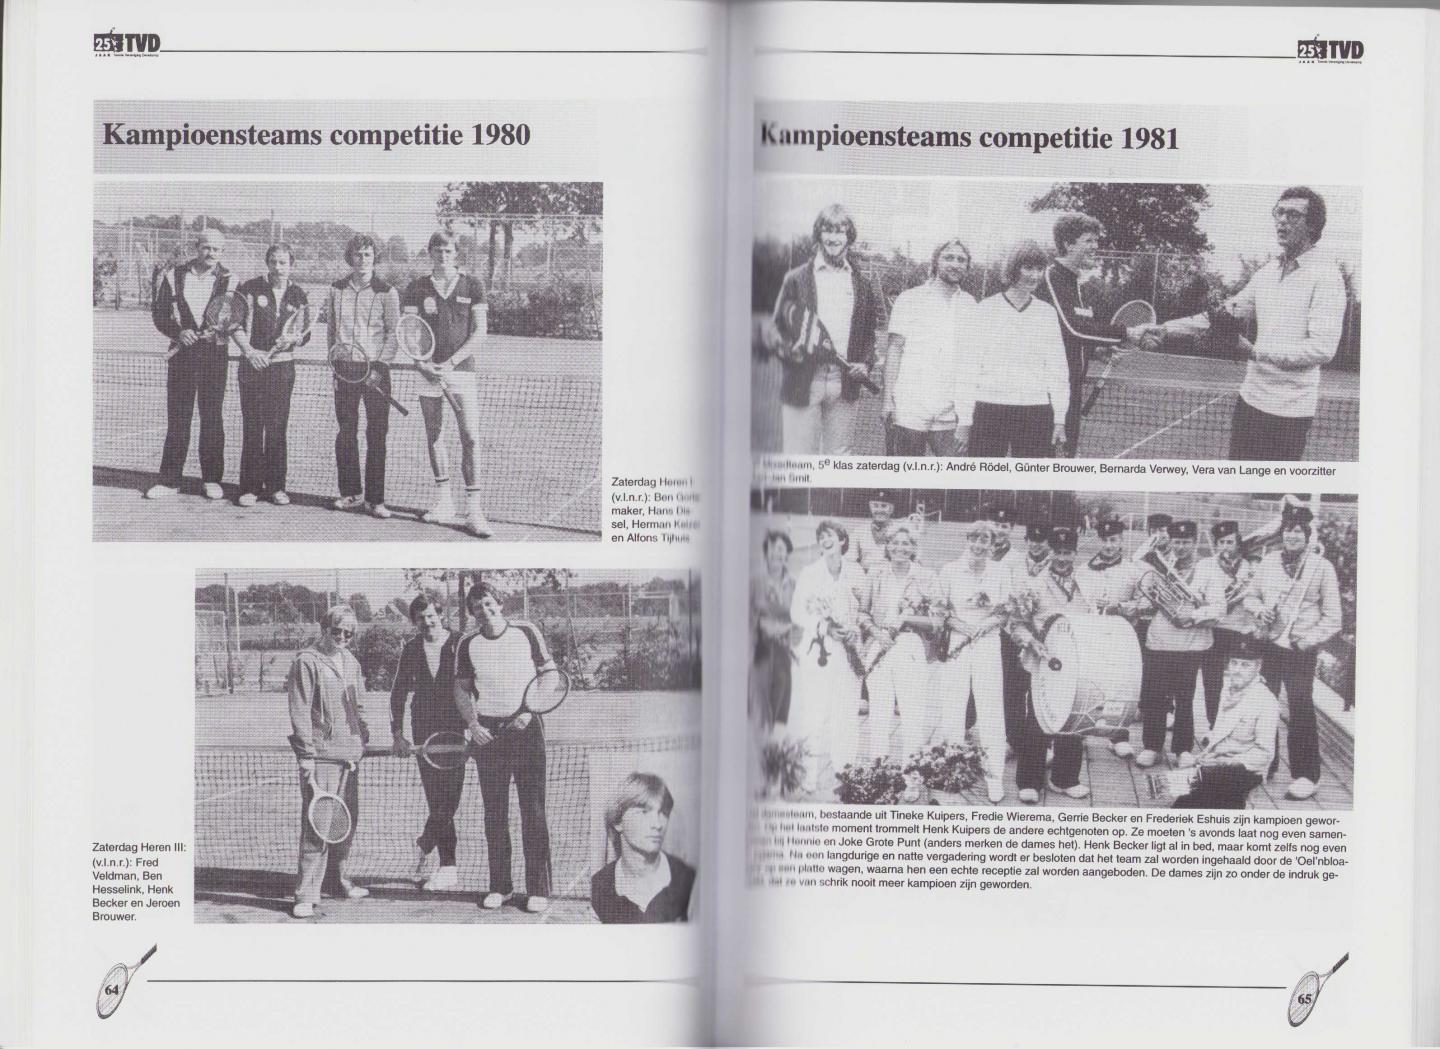 Red. - Jubileumboek 25 jaar TVD. Tennis Vereniging Denekamp 1973 - 1998